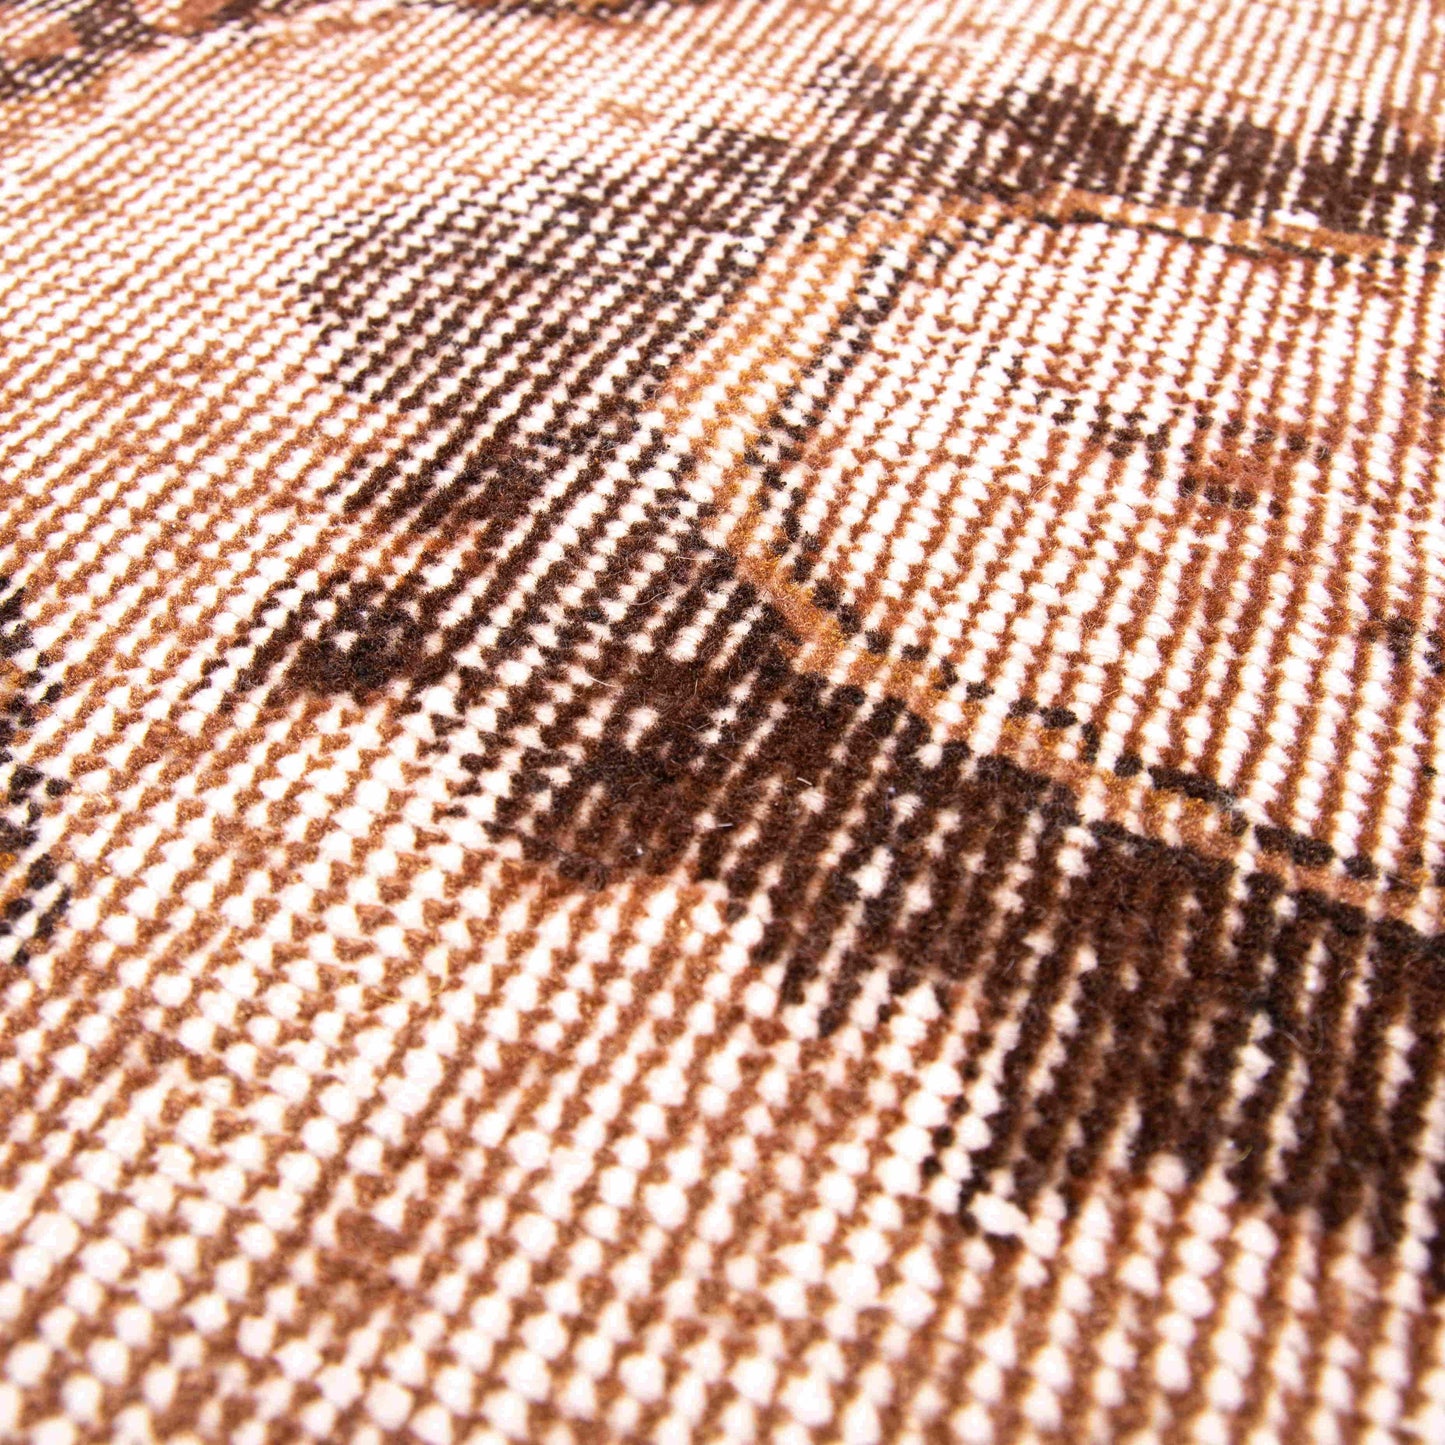 Oriental Rug Vintage Hand Knotted Wool On Cotton 172 x 292 Cm - 5' 8'' x 9' 7'' Orange C011 ER12